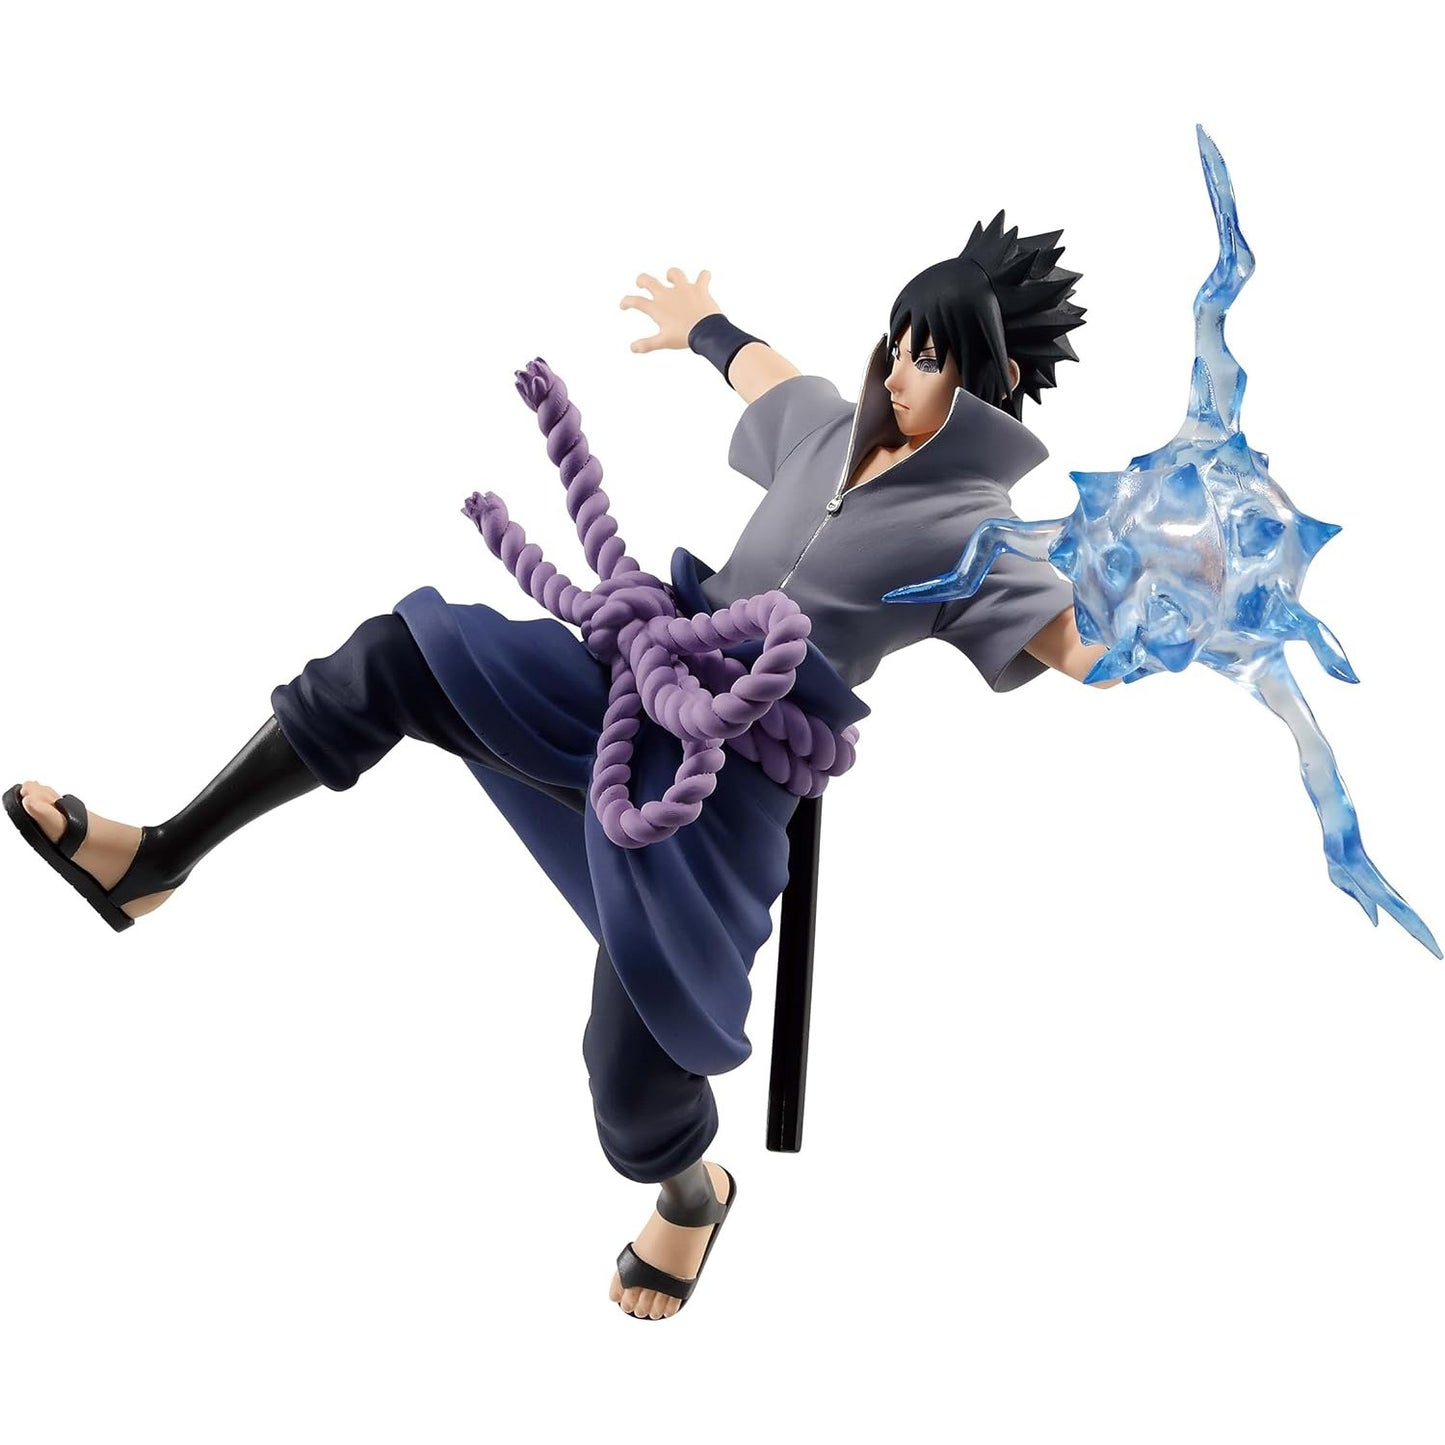 Naruto Shippuden - Effectreme Uchiha Sasuke Figure